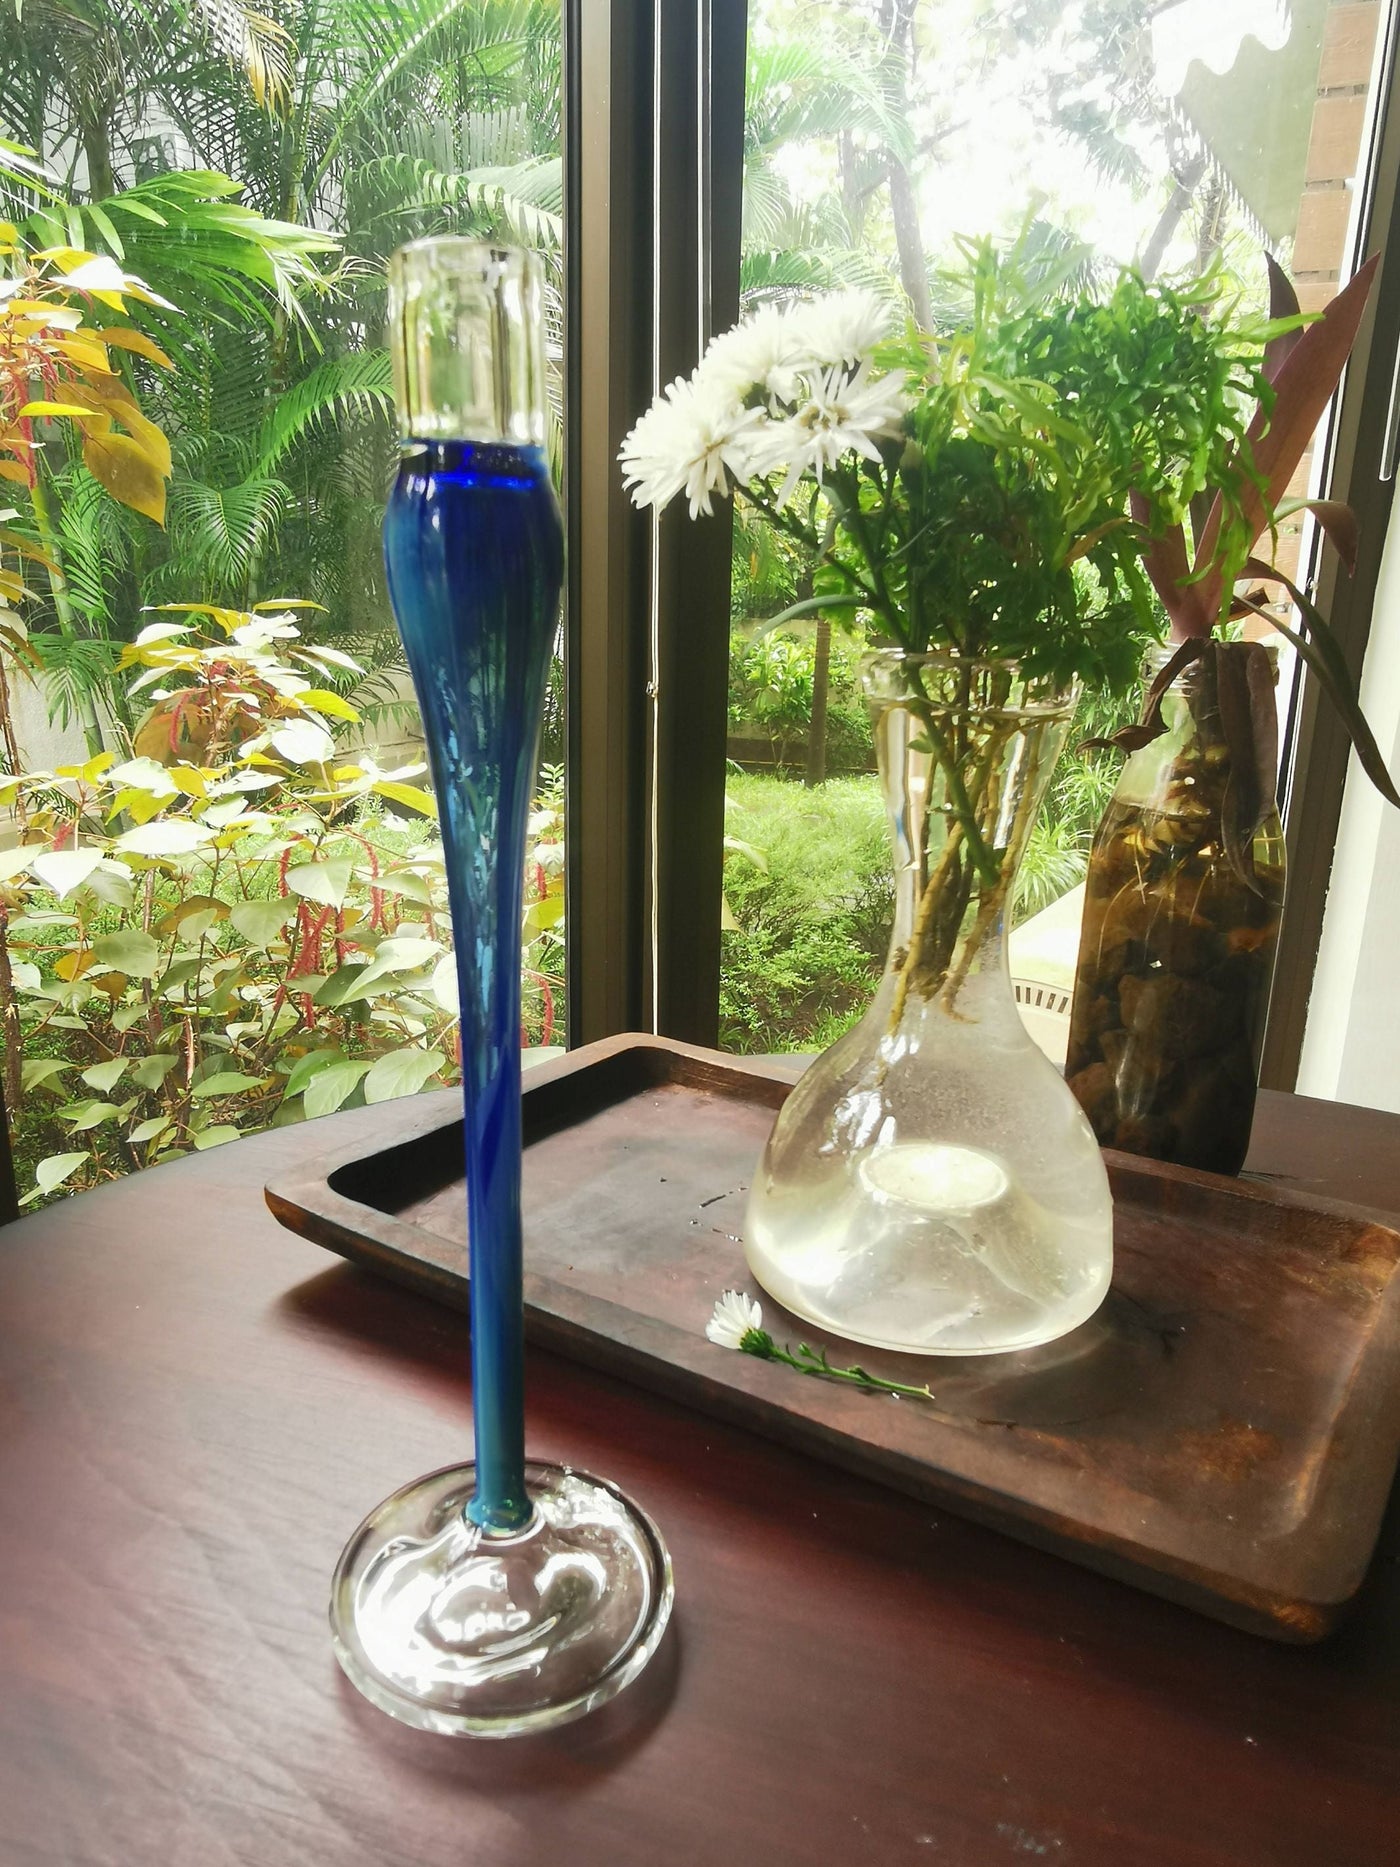 Taper glass candle holder - Elegant vintage